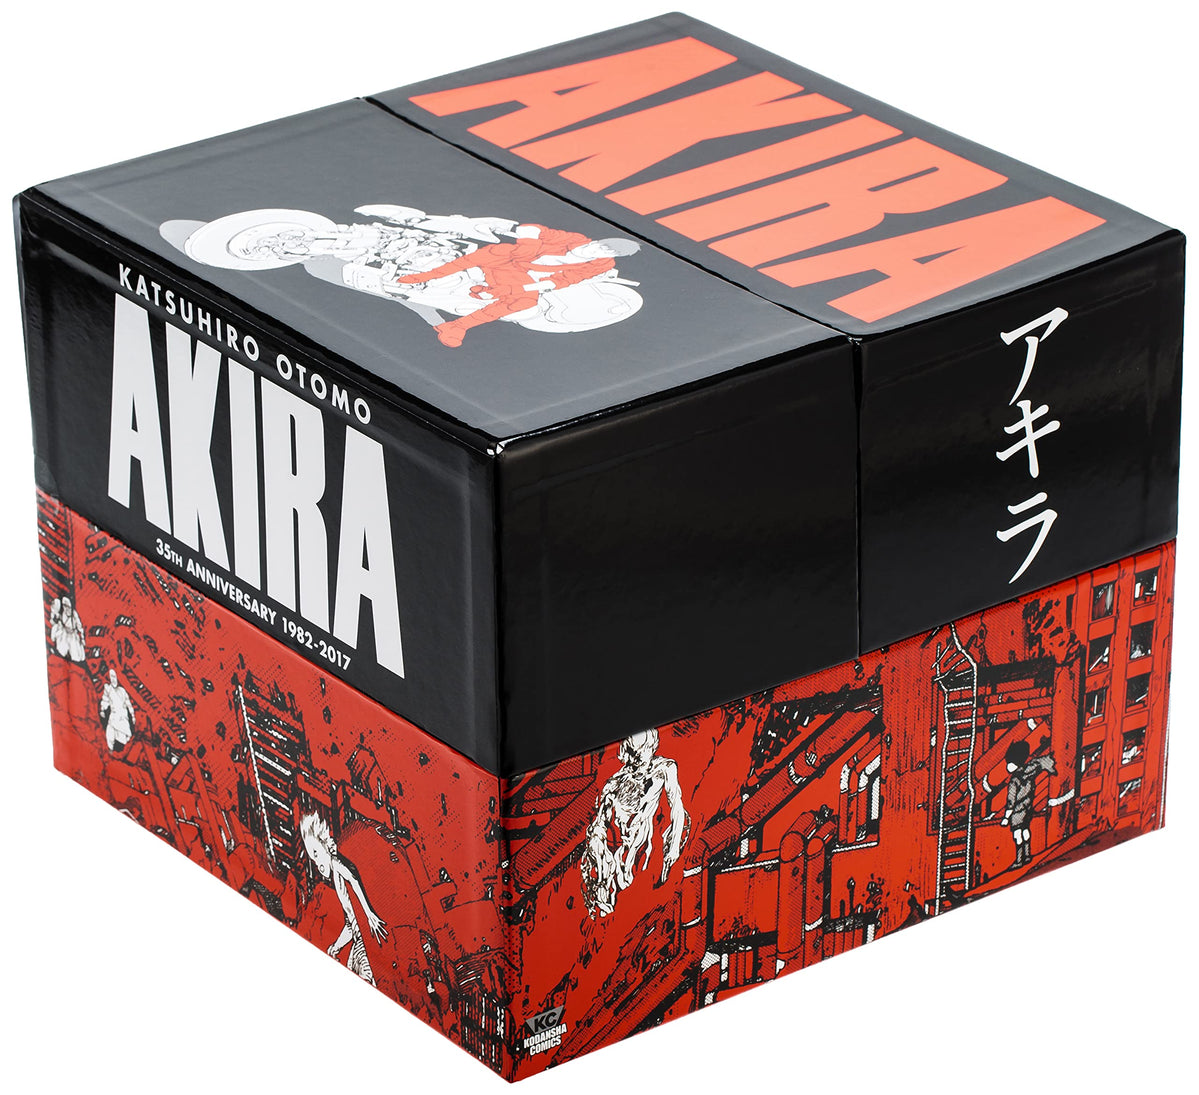 Akira by Katsuhiro Otomo 35th Anniversary Box — Books2Door